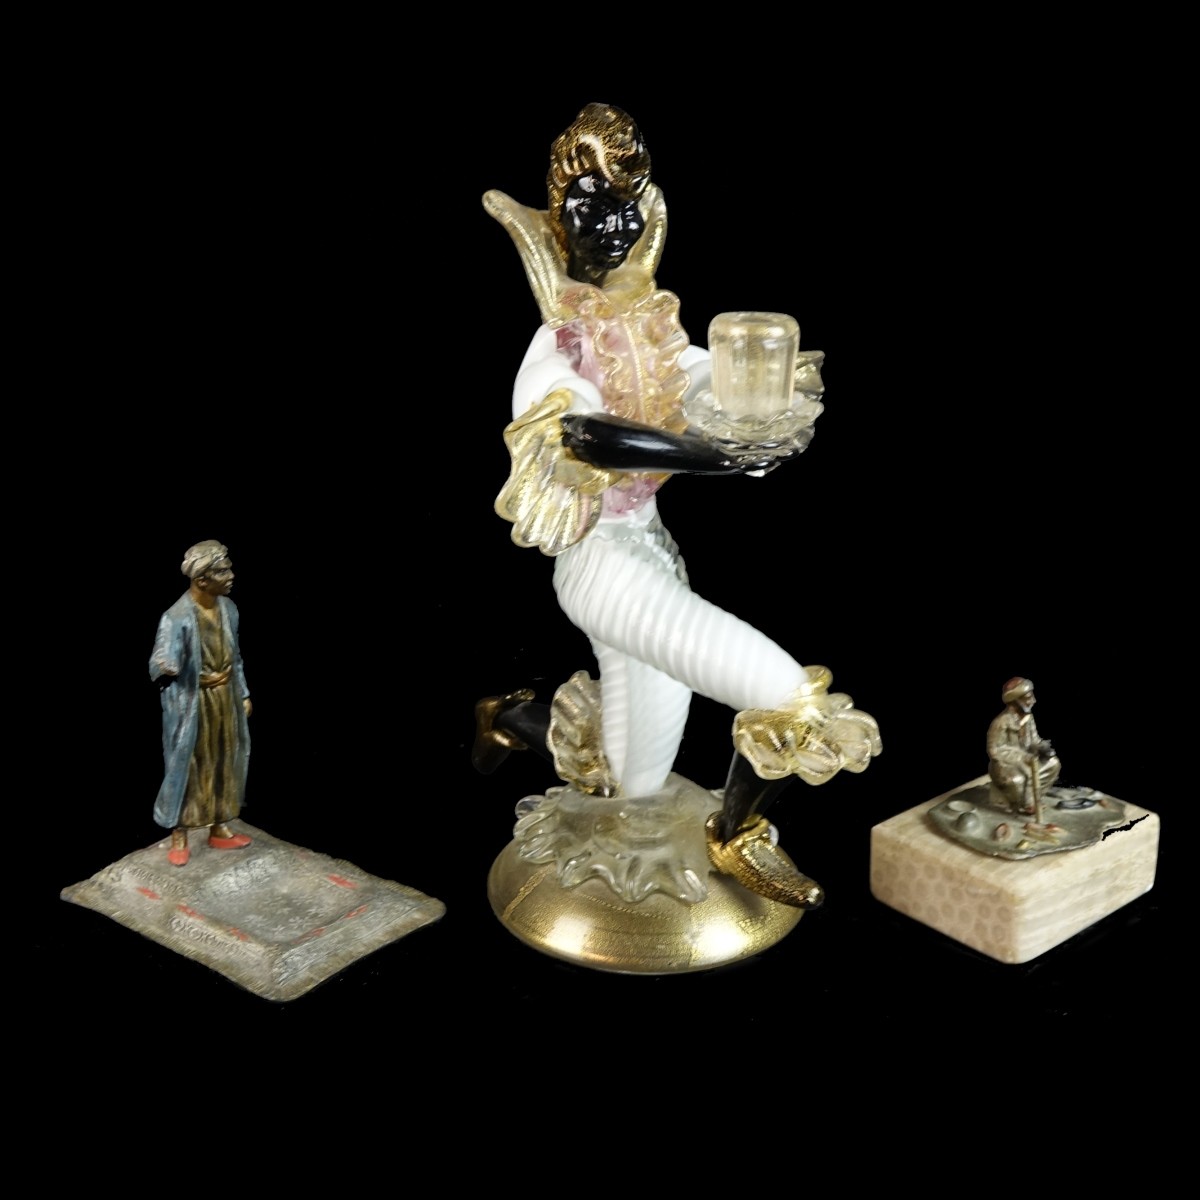 Three (3) Vintage Assorted Figurines